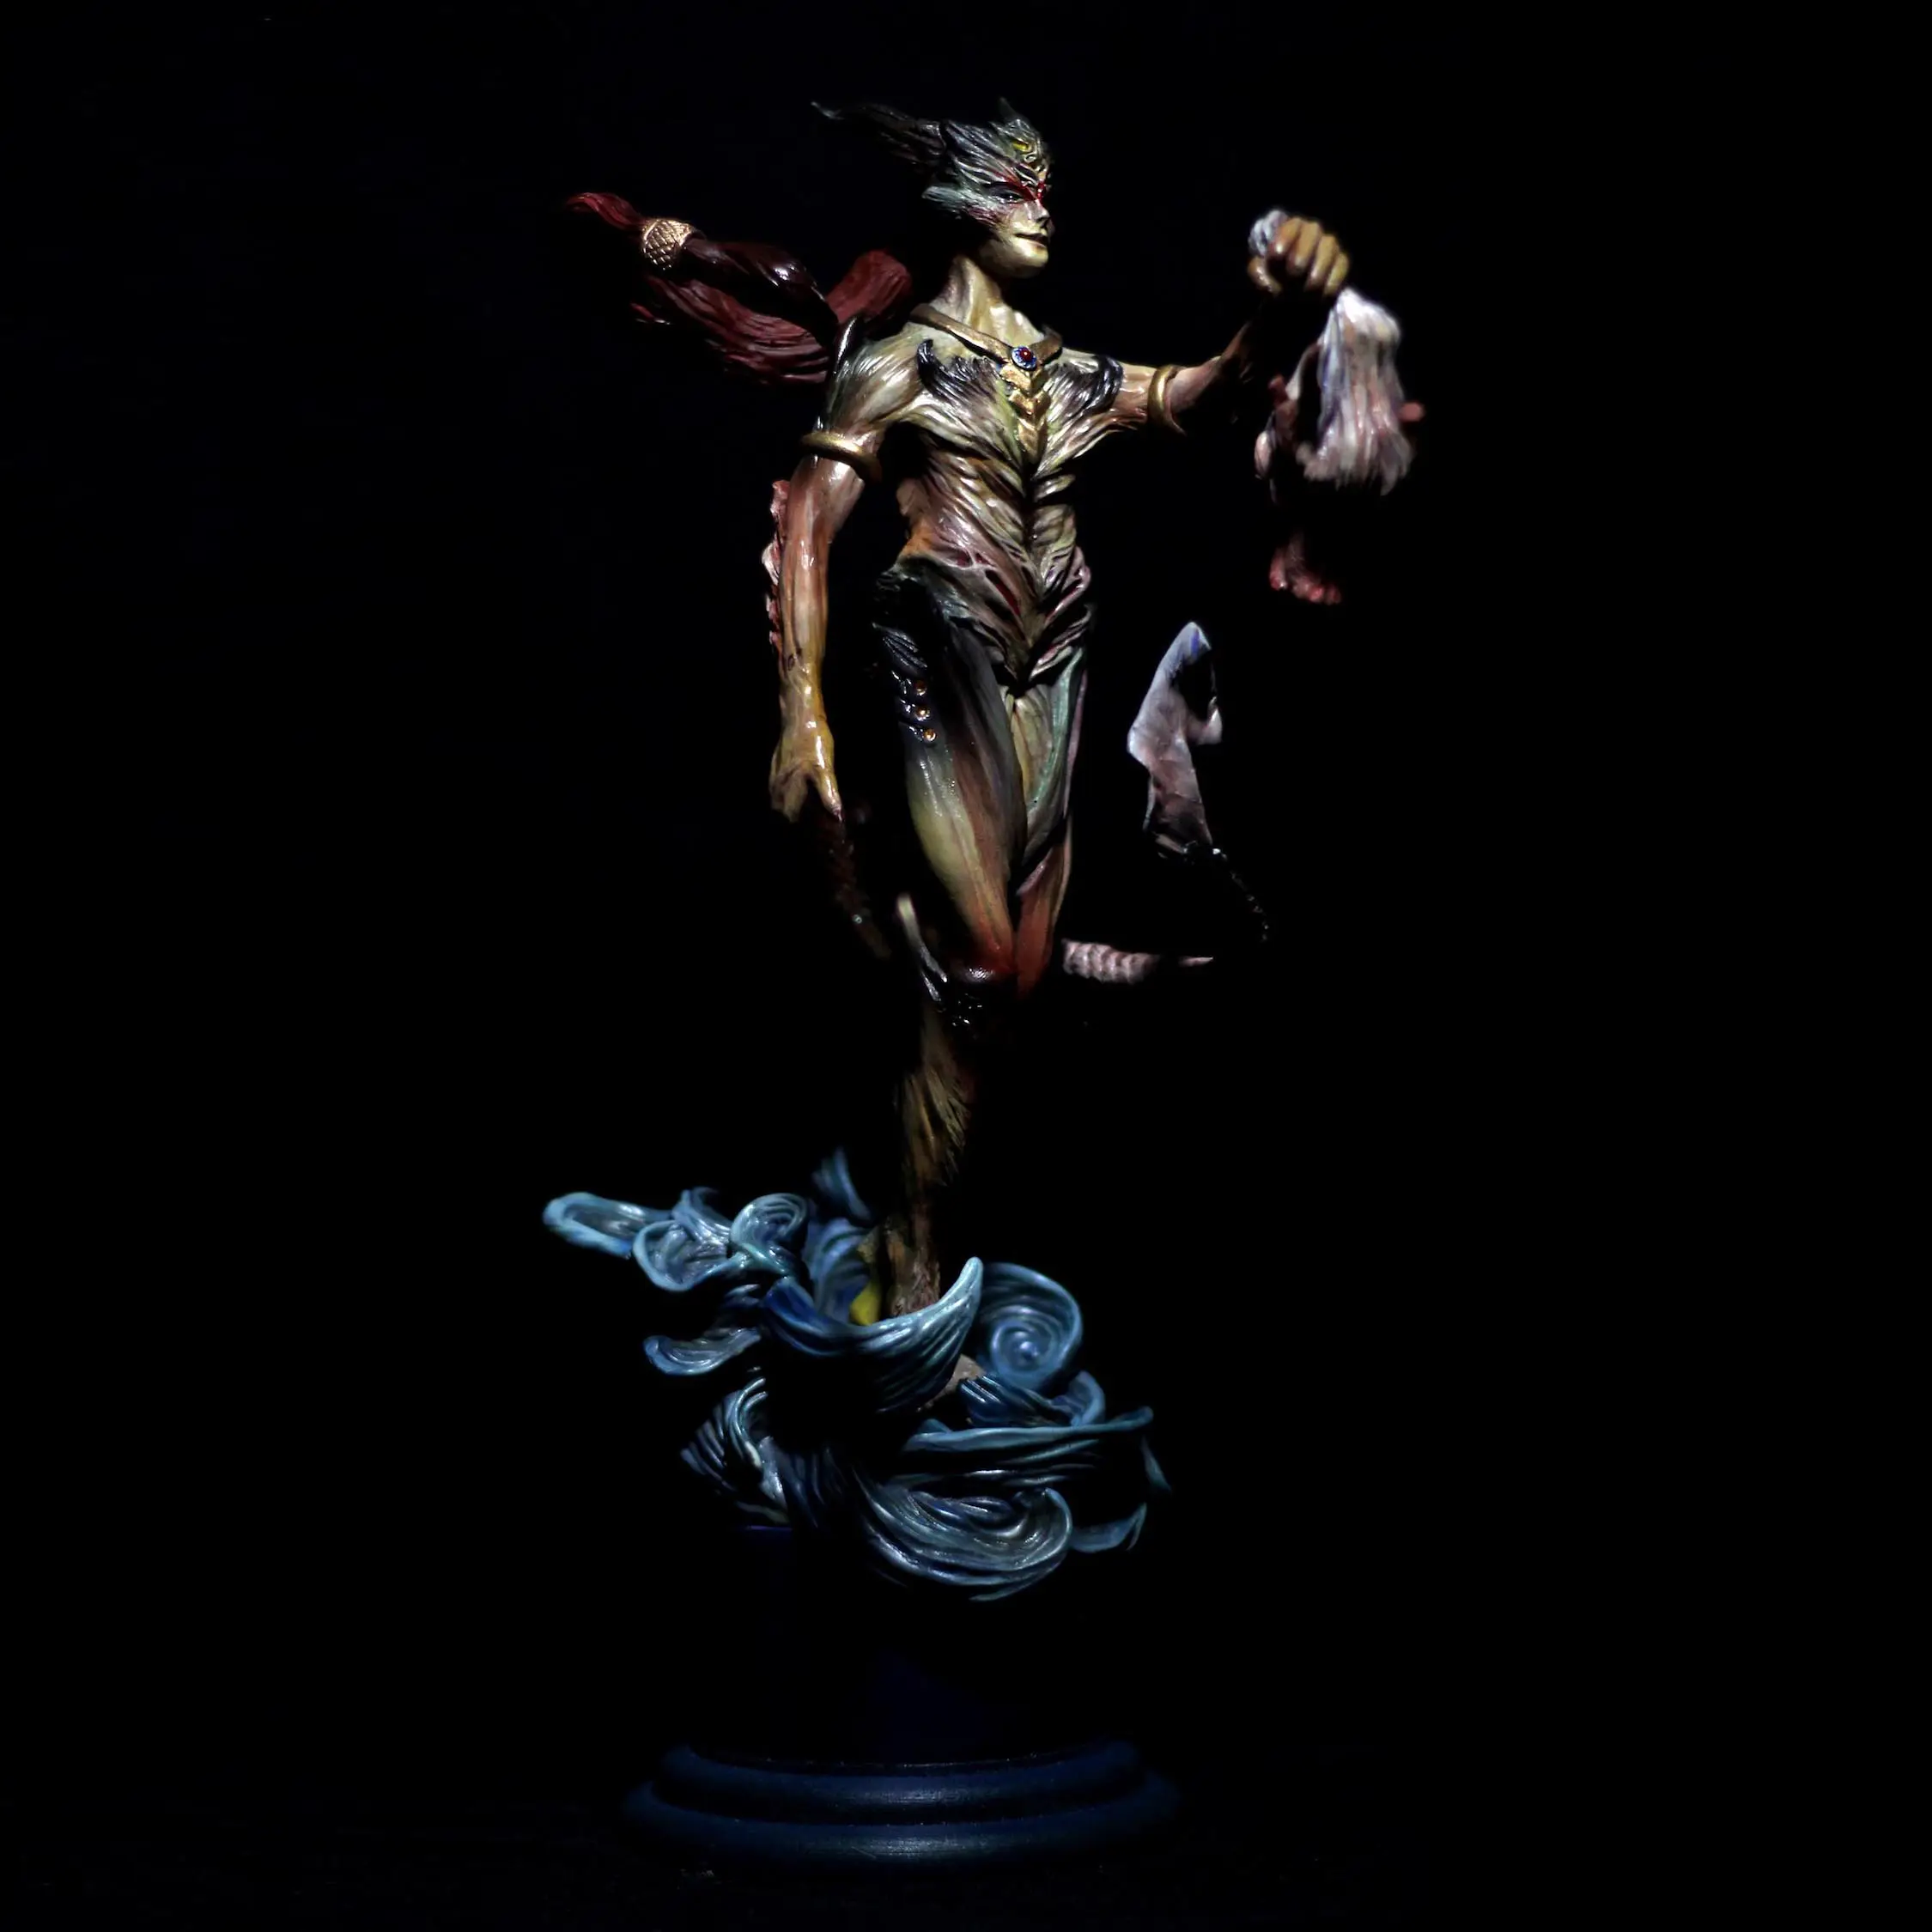 Özel yapmak 3D Polyresin hatıra heykelcik koleksiyon reçine el sanatları insanlar heykel